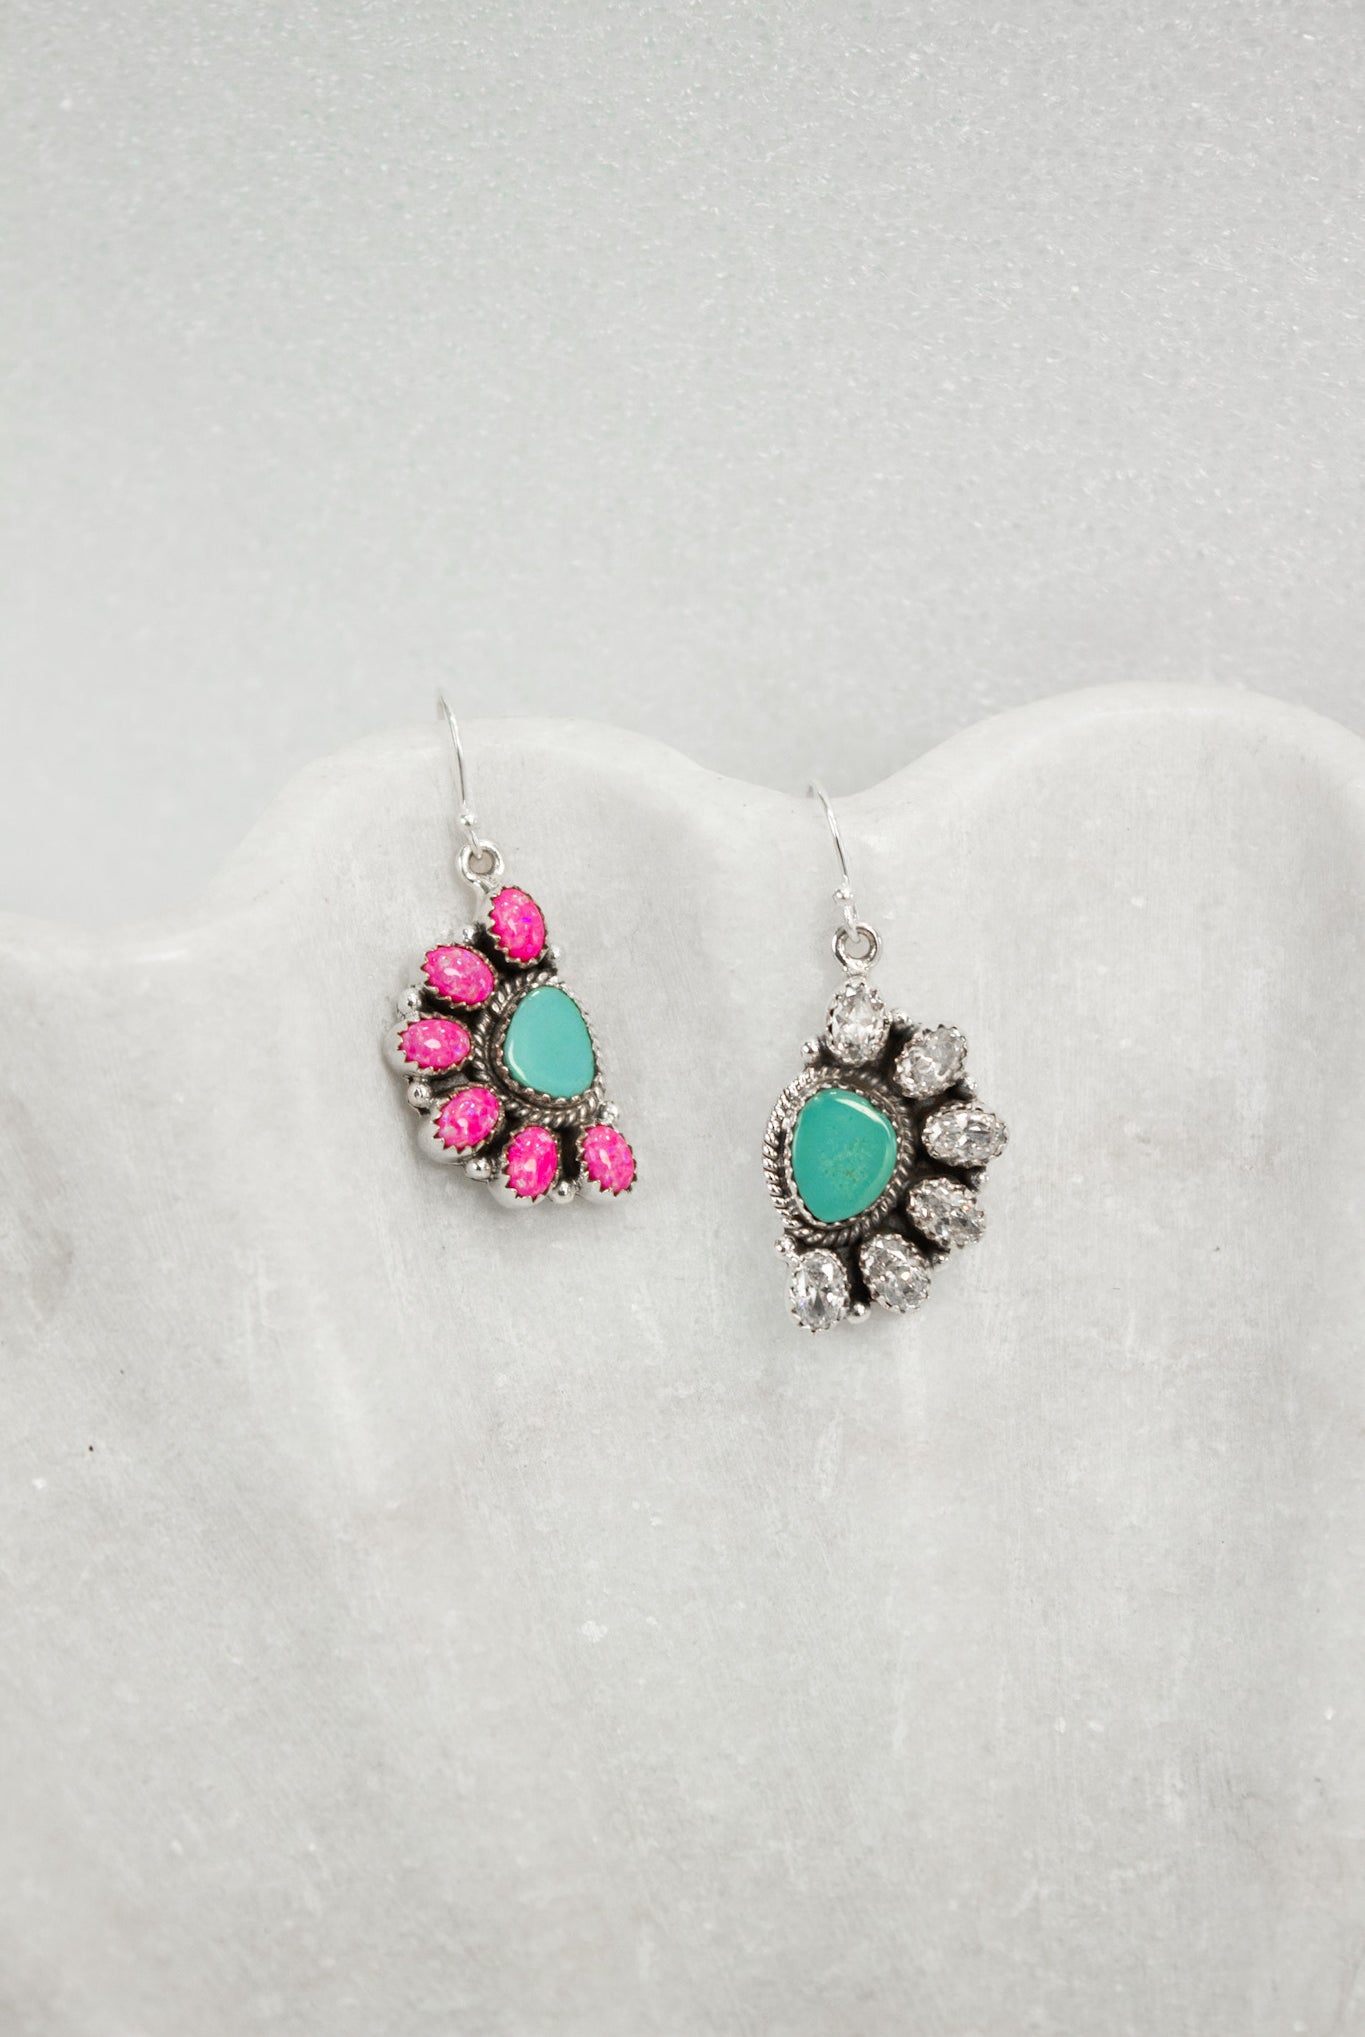 Half Opal Cluster Stone Earrings-Stud Earrings-Krush Kandy, Women's Online Fashion Boutique Located in Phoenix, Arizona (Scottsdale Area)